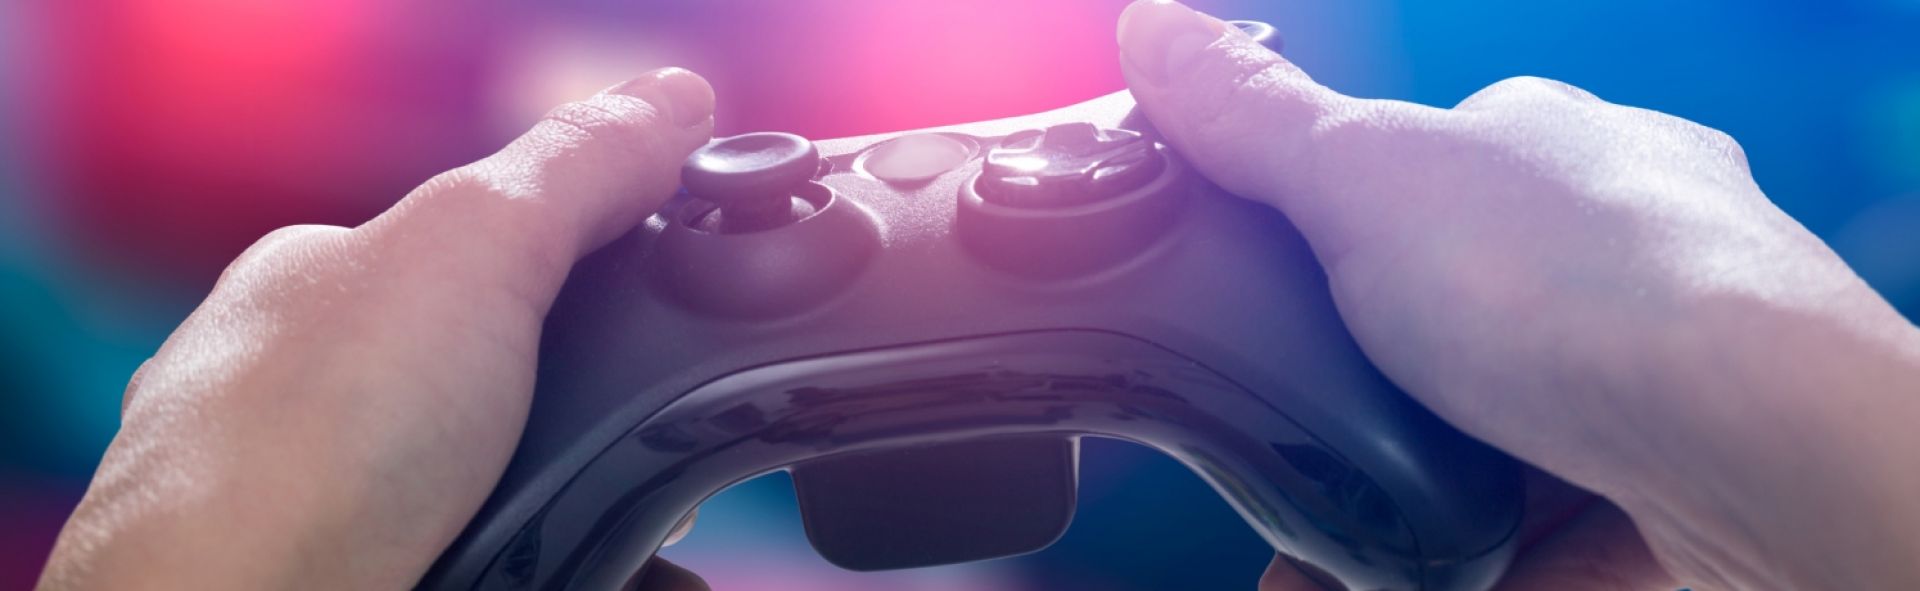 60% dintre gamerii români fac achiziții în timpul sesiunilor de gaming